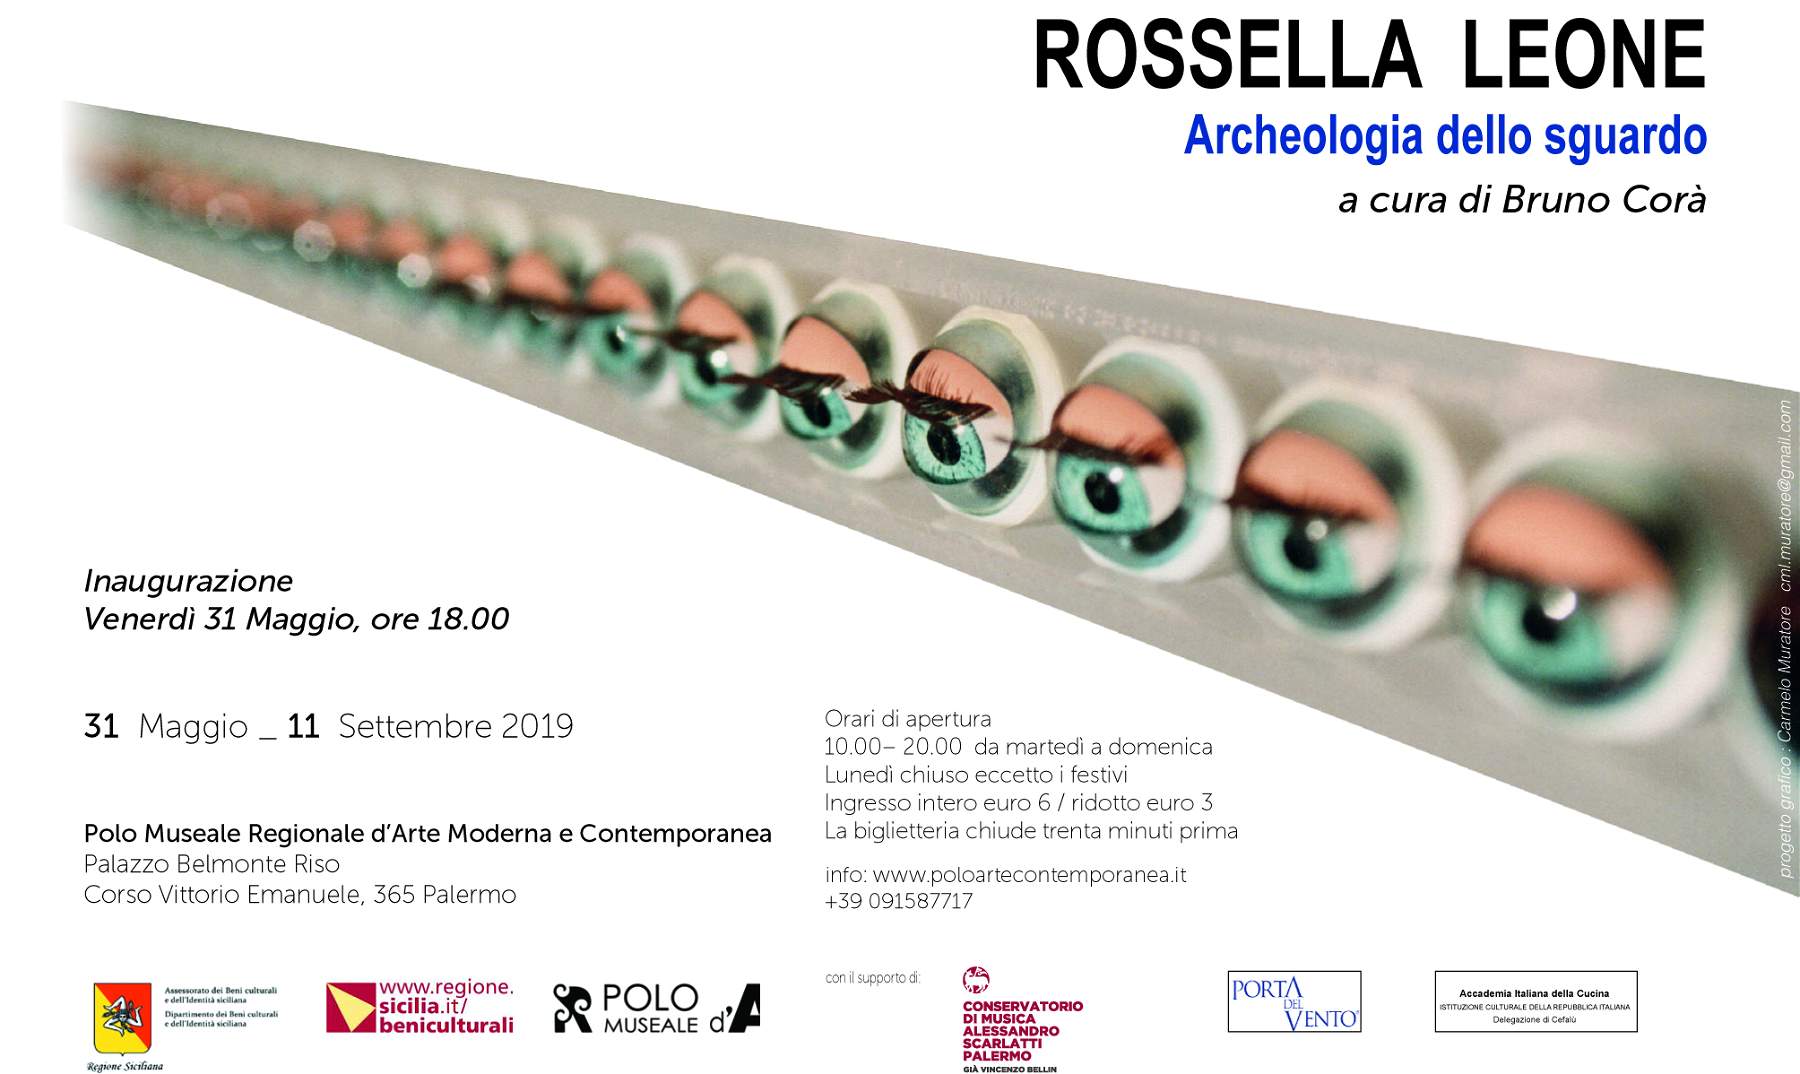 Le opere di Rossella Leone esposte a Palermo nella mostra “Archeologia dello sguardo”